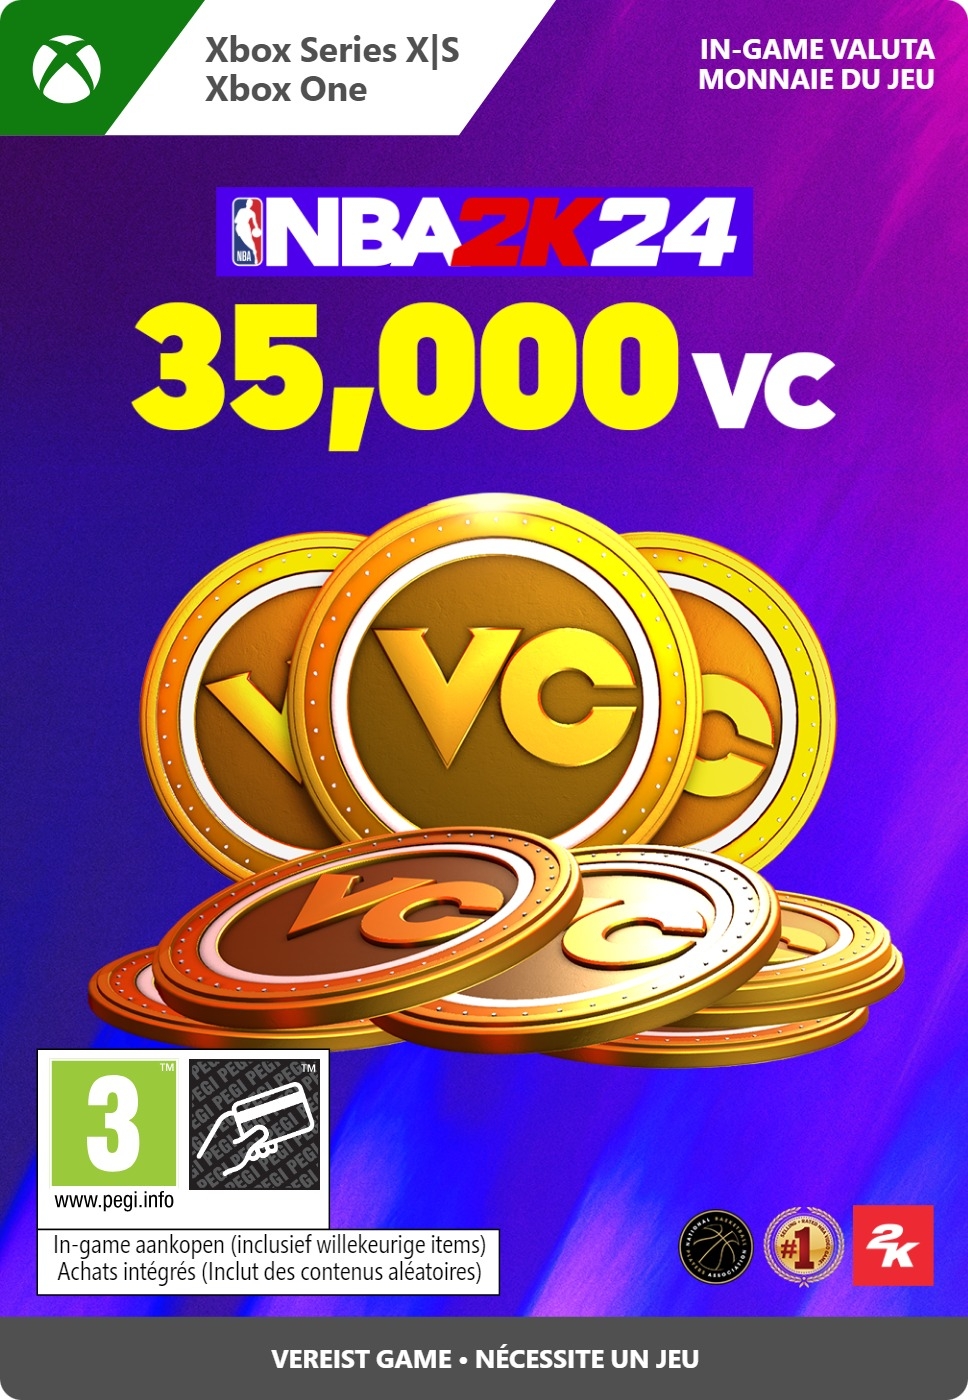 35.000 Xbox NBA 2K24 VC